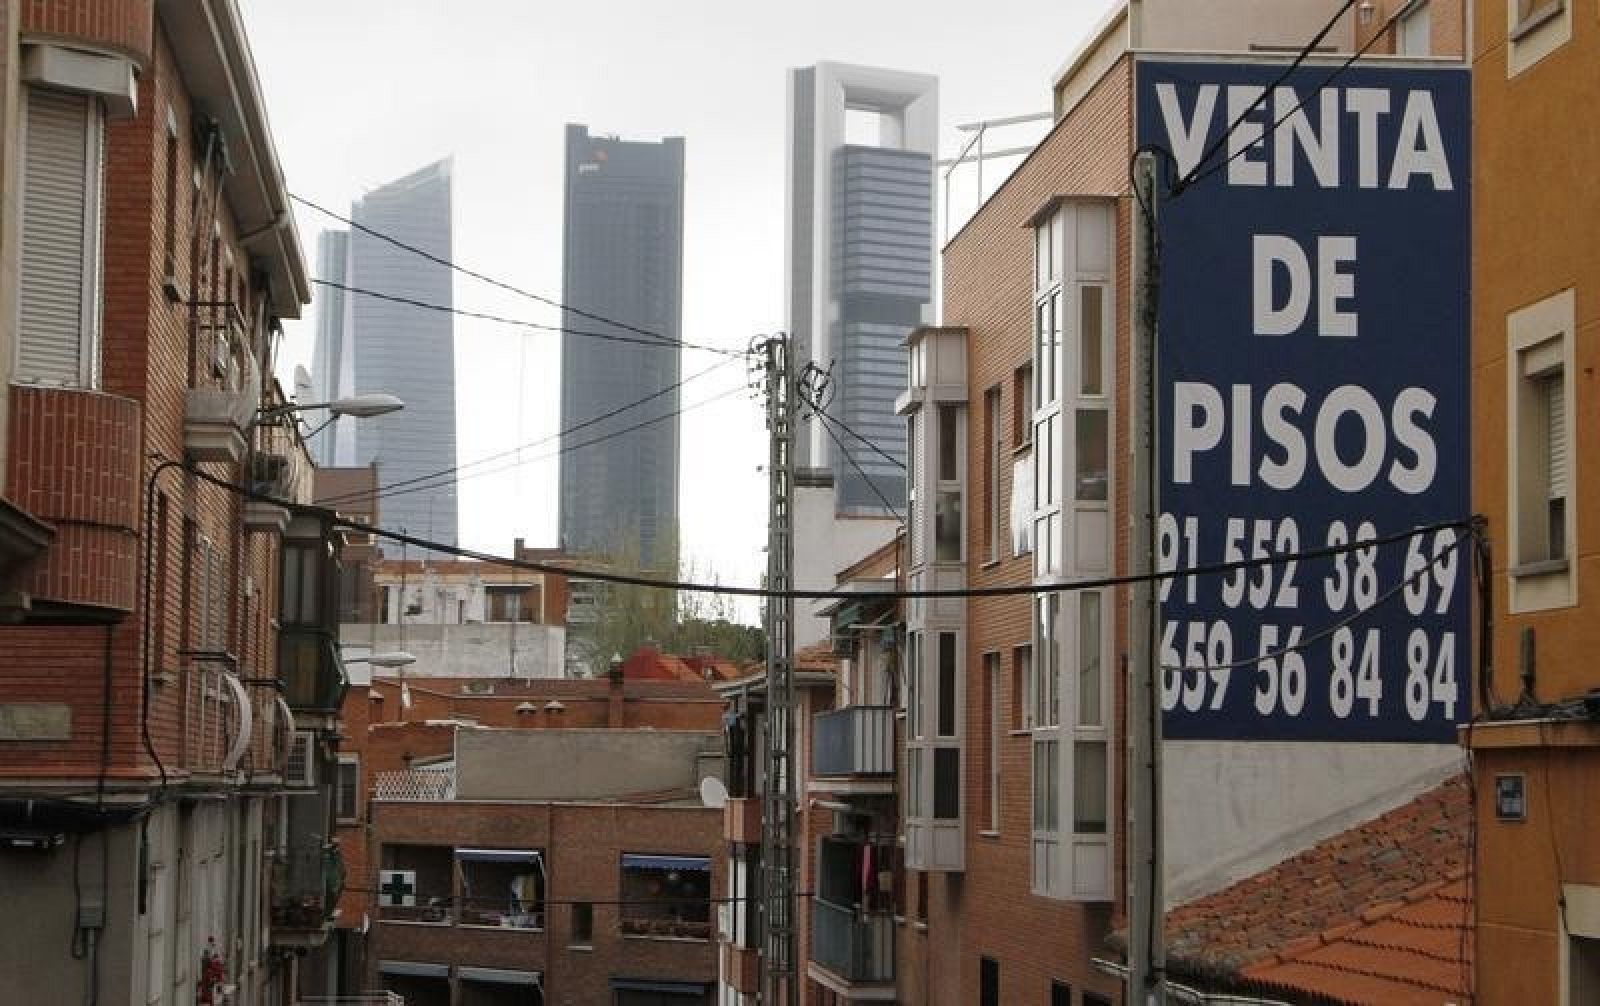 Cartel de venta de pisos en un bloque de apartamentos de Madrid